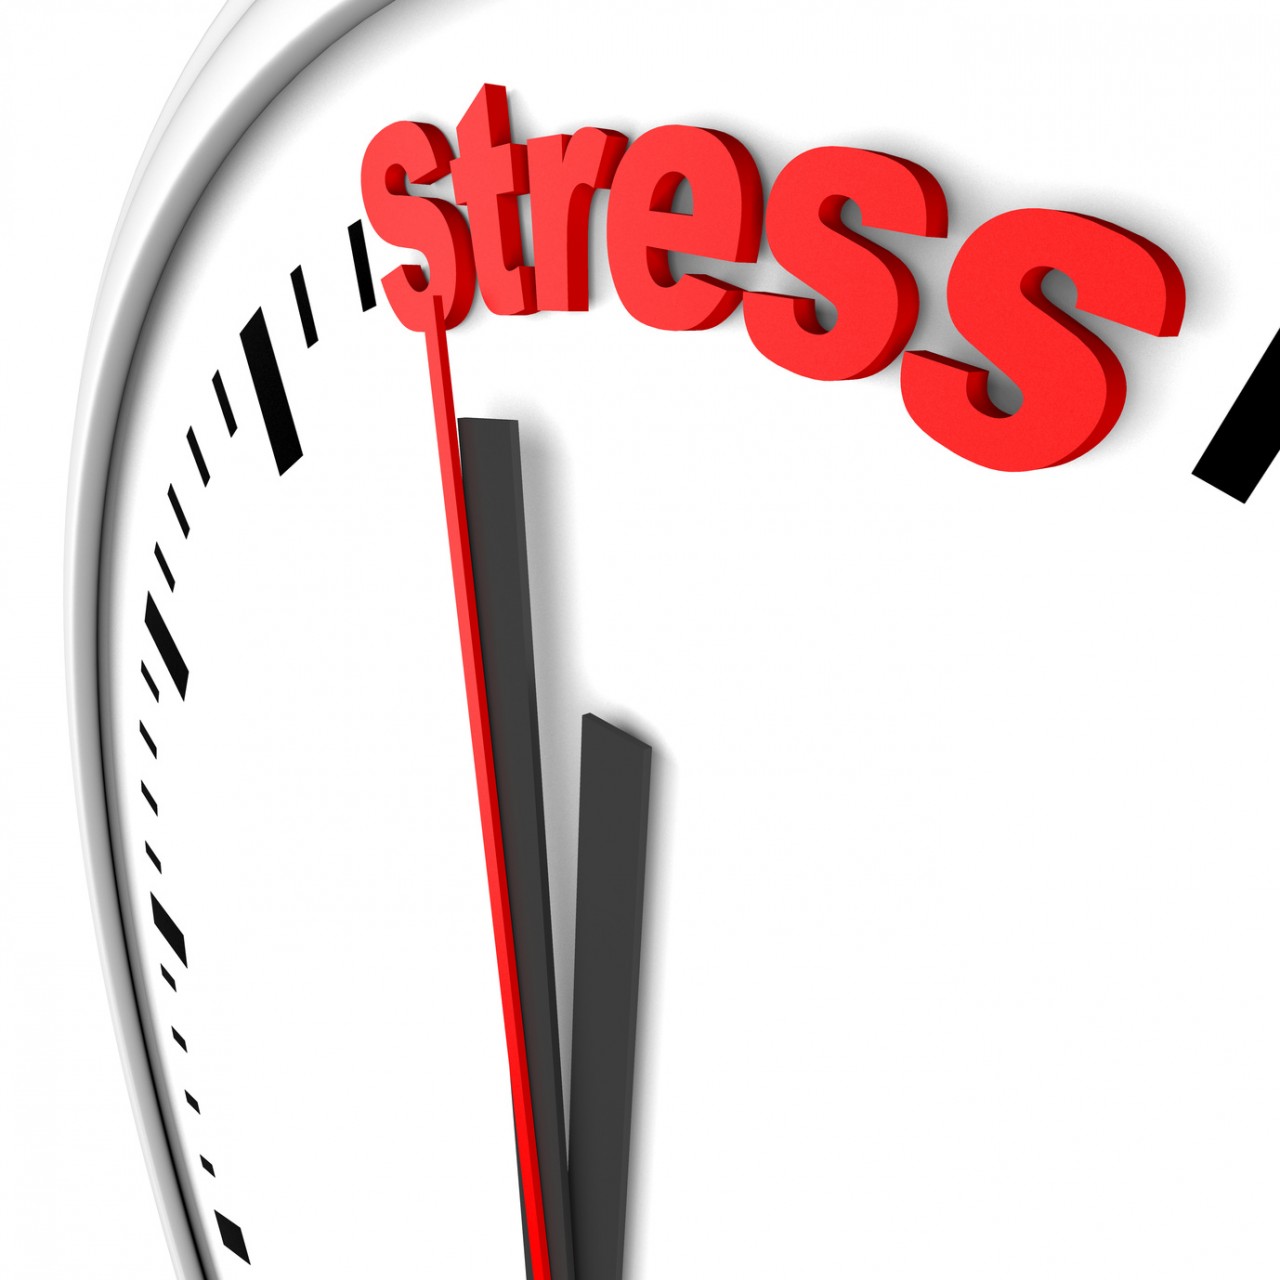 Aujourd’hui déjà 40% des travailleuses et des travailleurs souffrent de stress au travail.